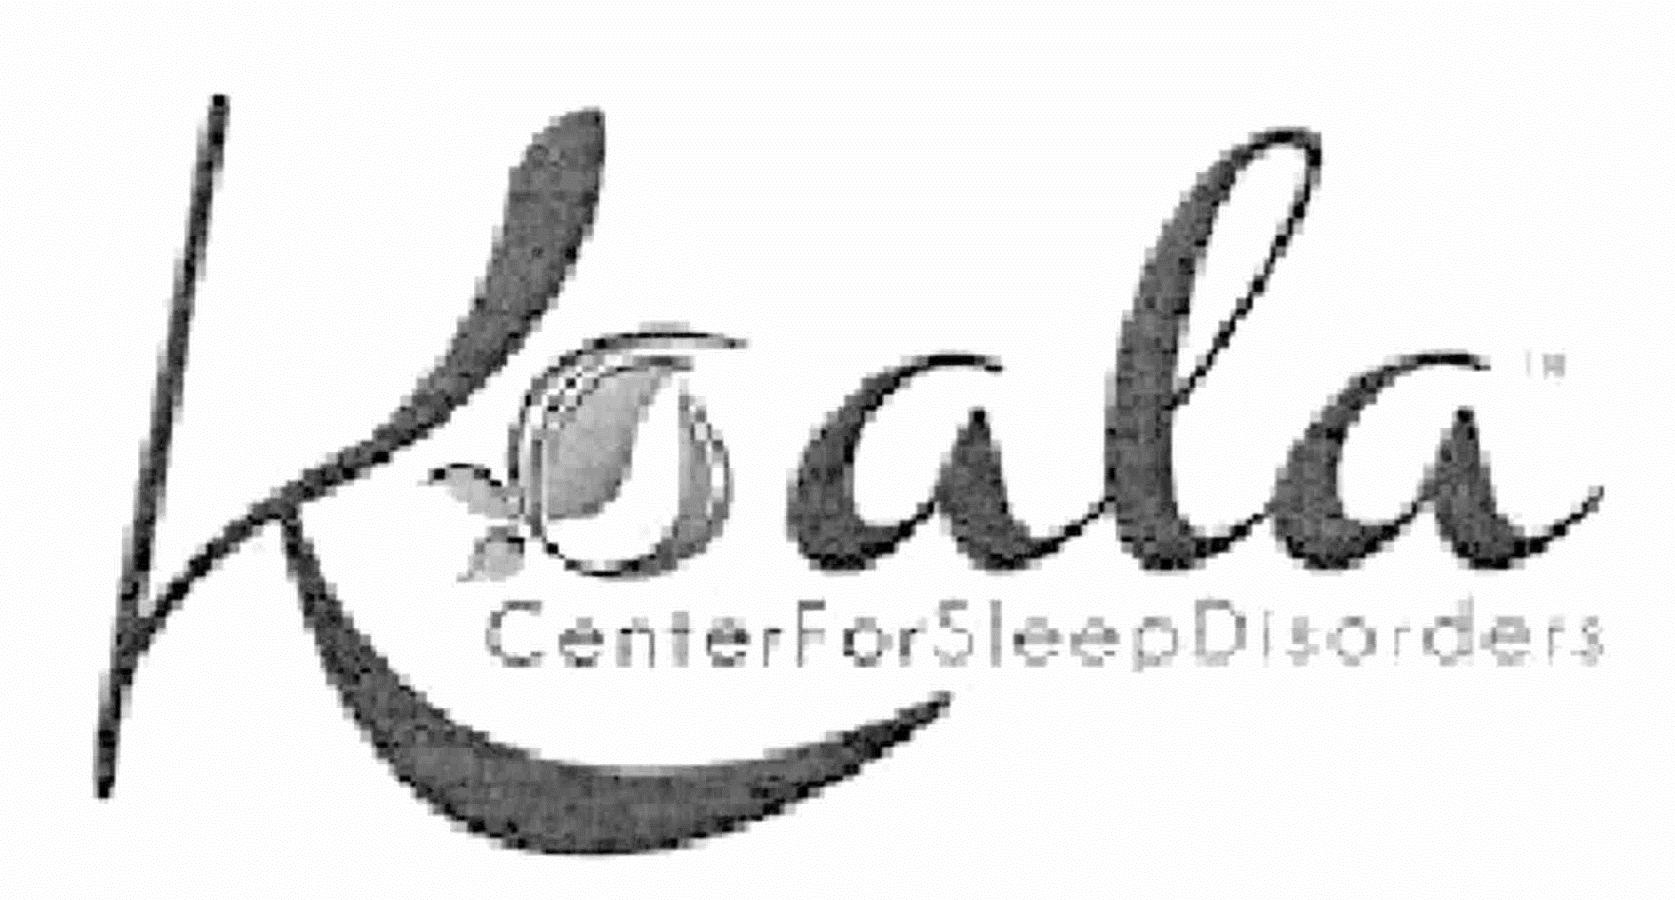 KOALA CENTER FOR SLEEP DISORDERS